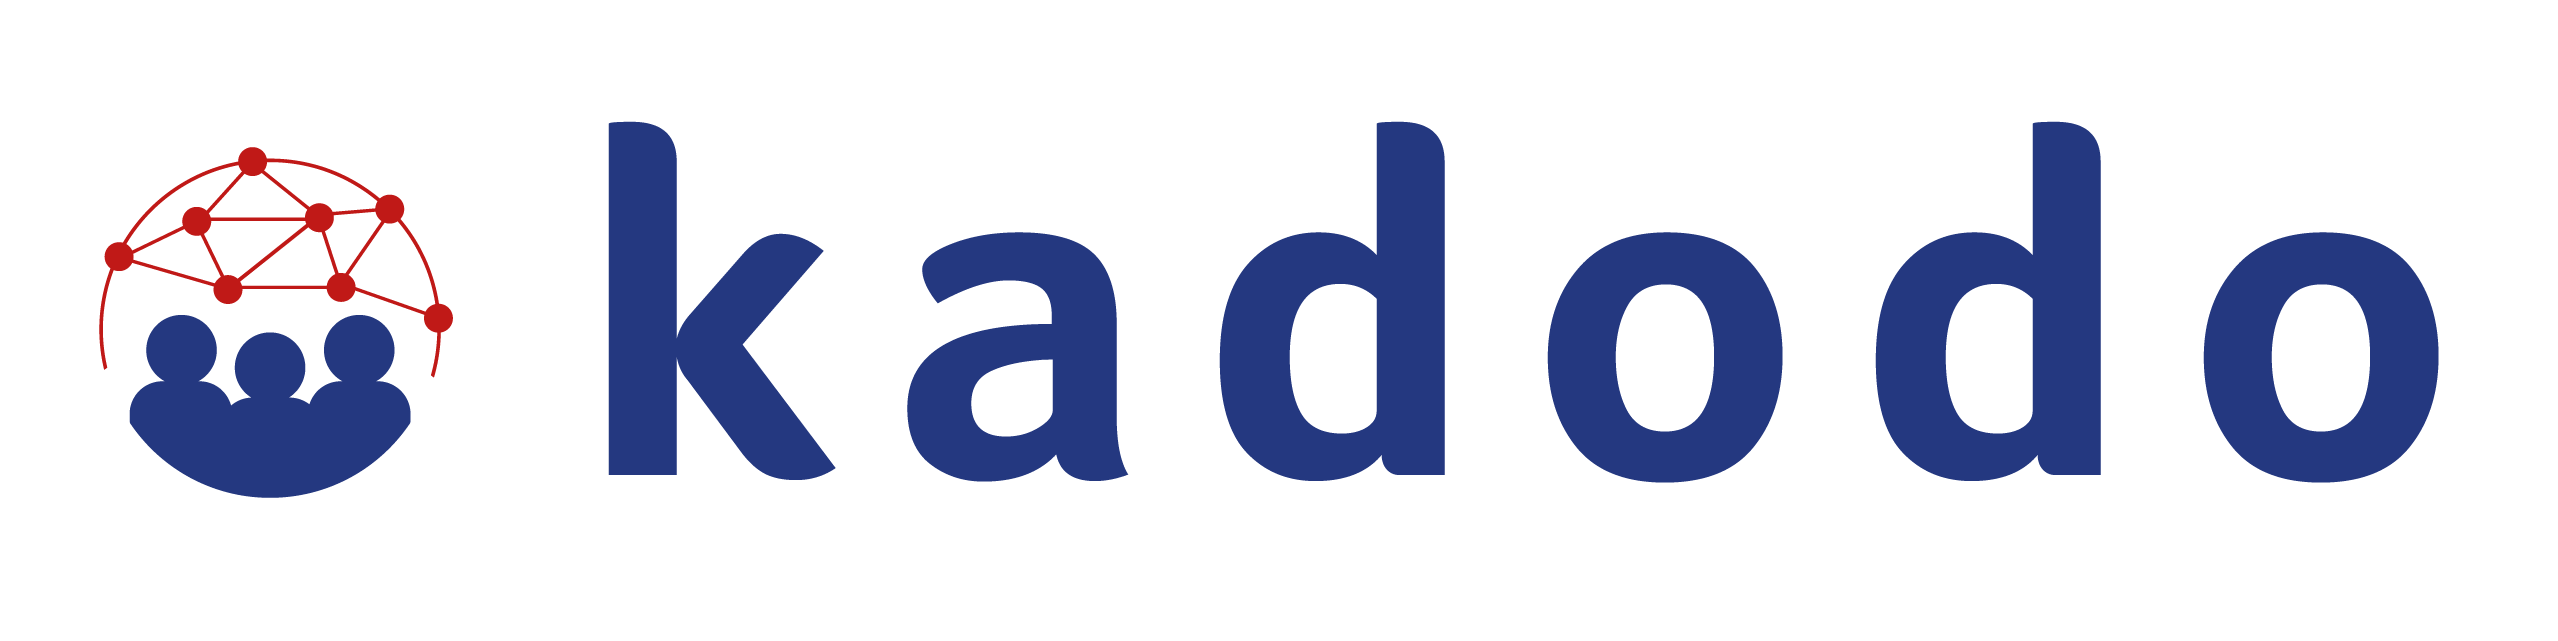 Kadodo Logo